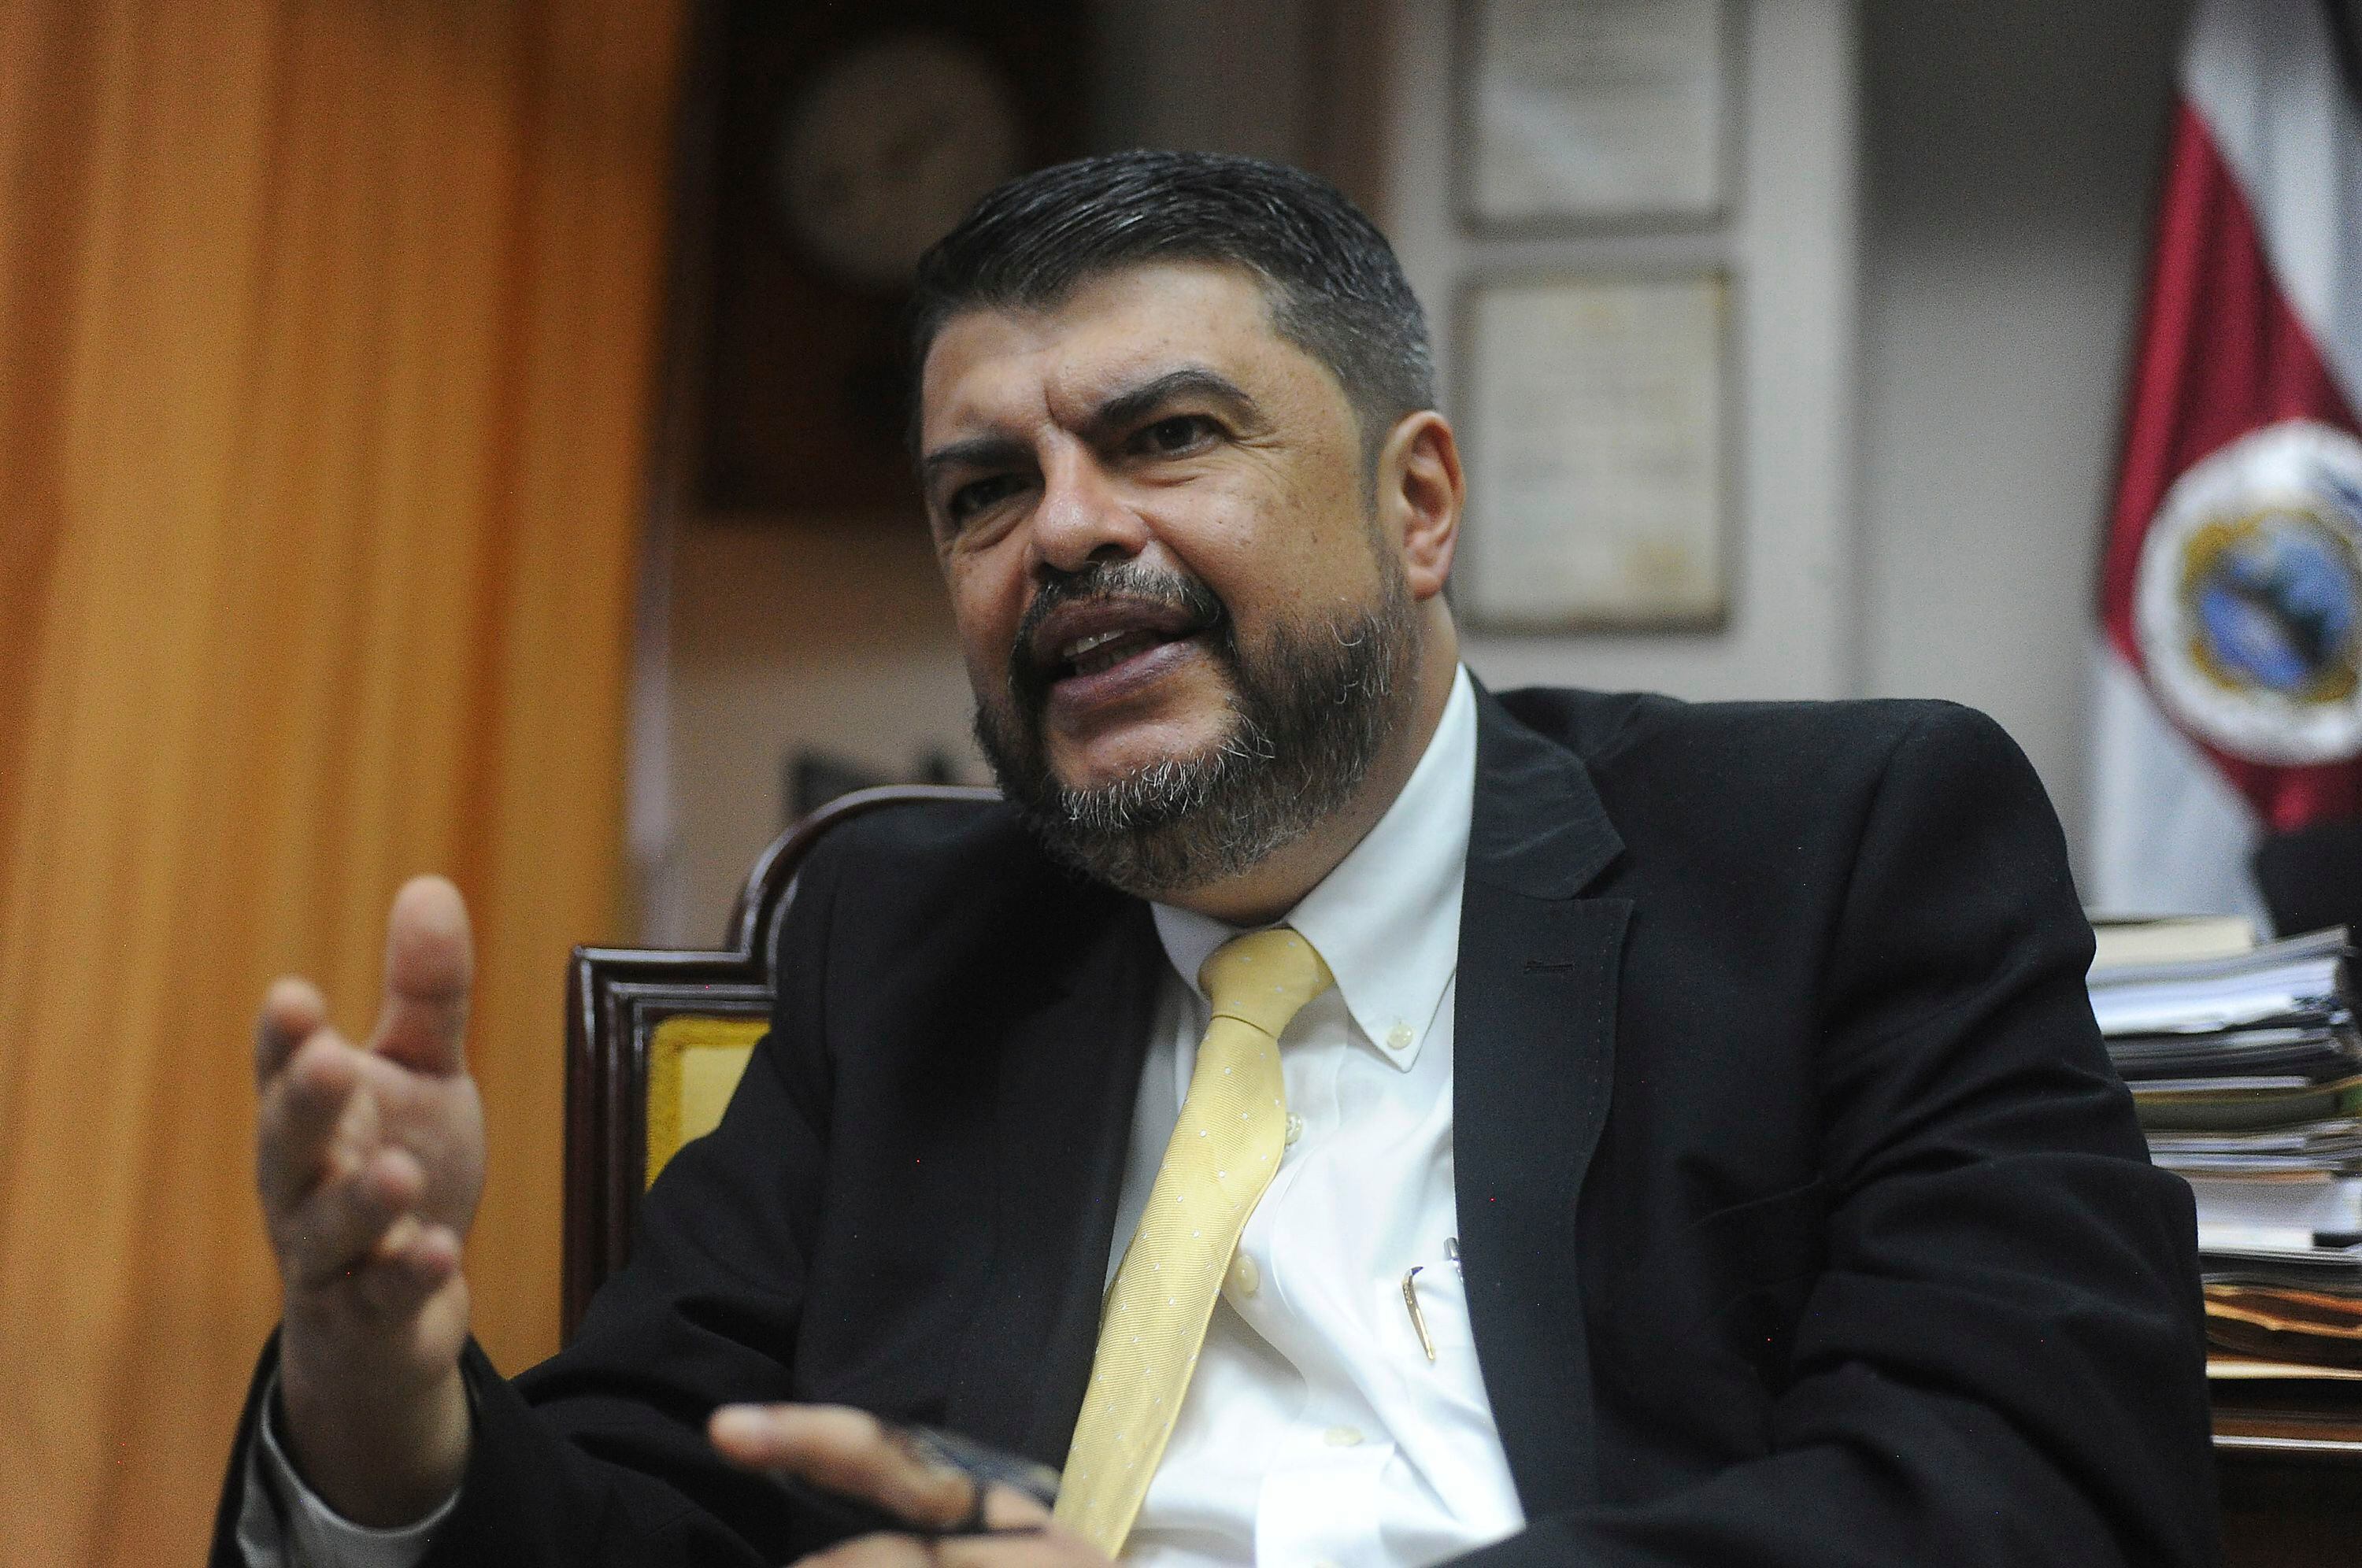 El ministro de Seguridad Pública, Mario Zamora, se refirió al proyecto de ley que pretende habilitar la extradición de costarricenses requeridos por la justicia internacional.